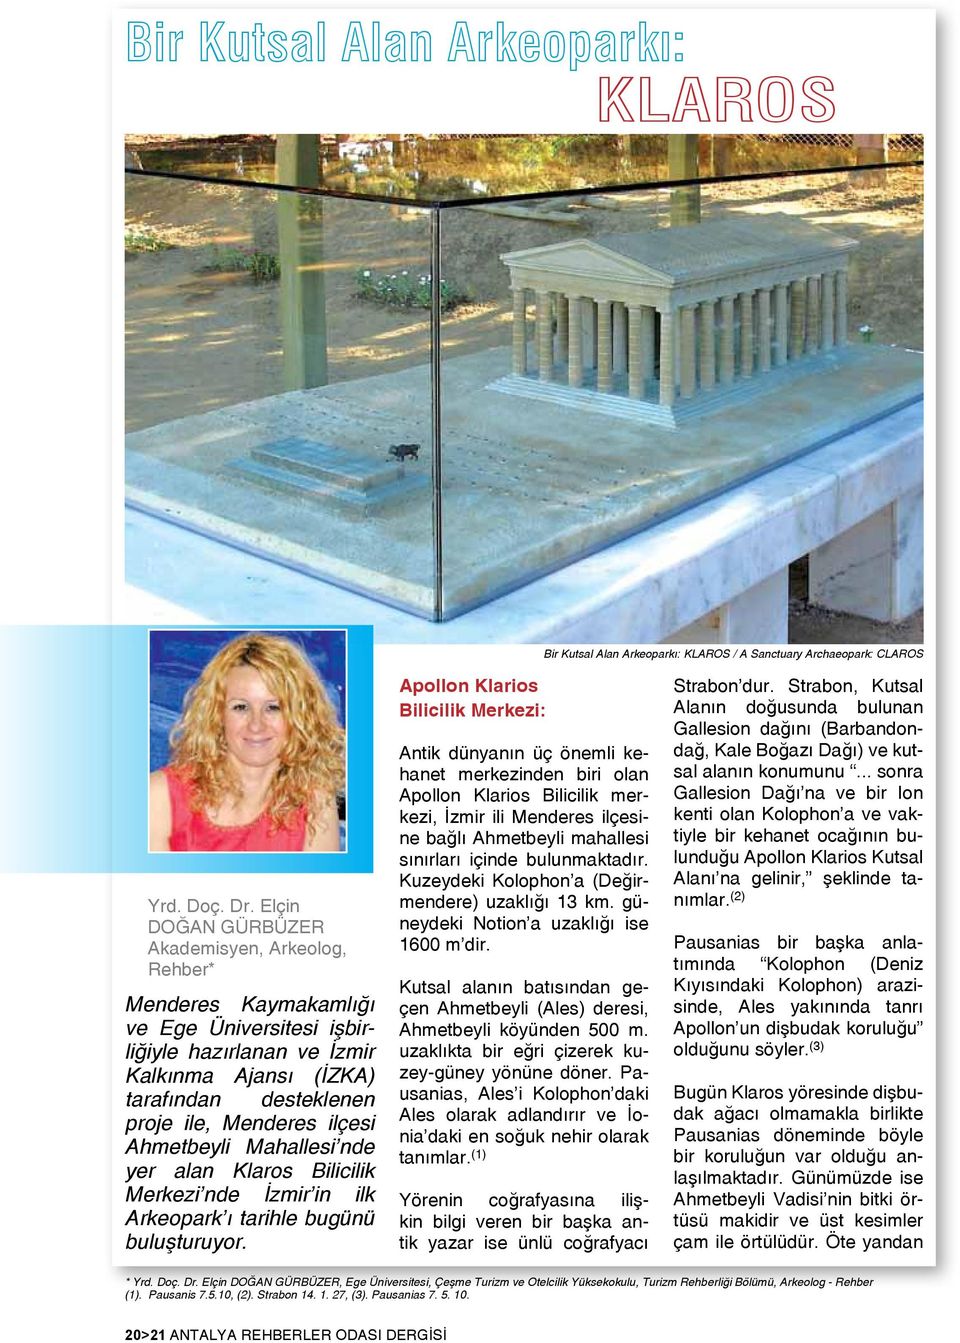 Ahmetbeyli Mahallesi nde yer alan Klaros Bilicilik Merkezi nde İzmir in ilk Arkeopark ı tarihle bugünü buluşturuyor.